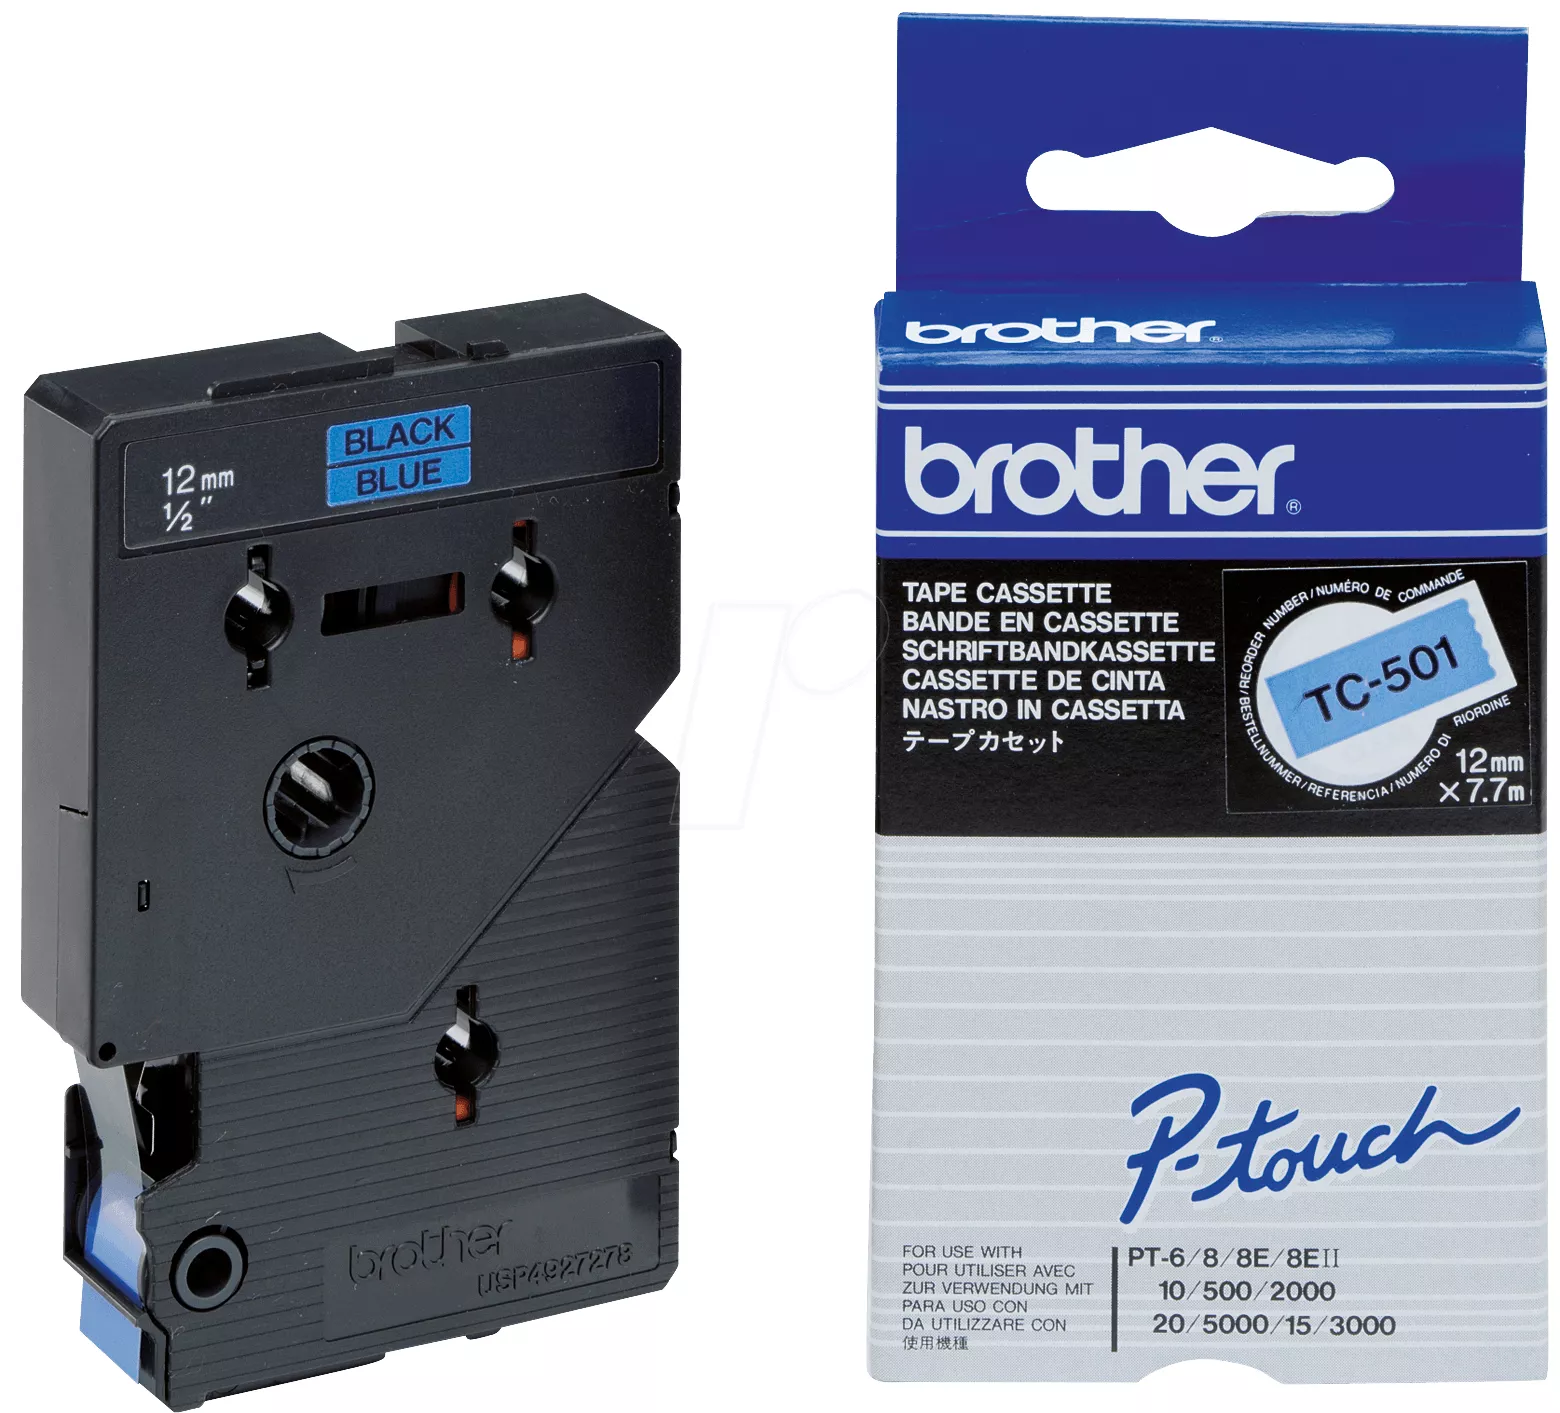 Achat Brother TC-501 et autres produits de la marque Brother